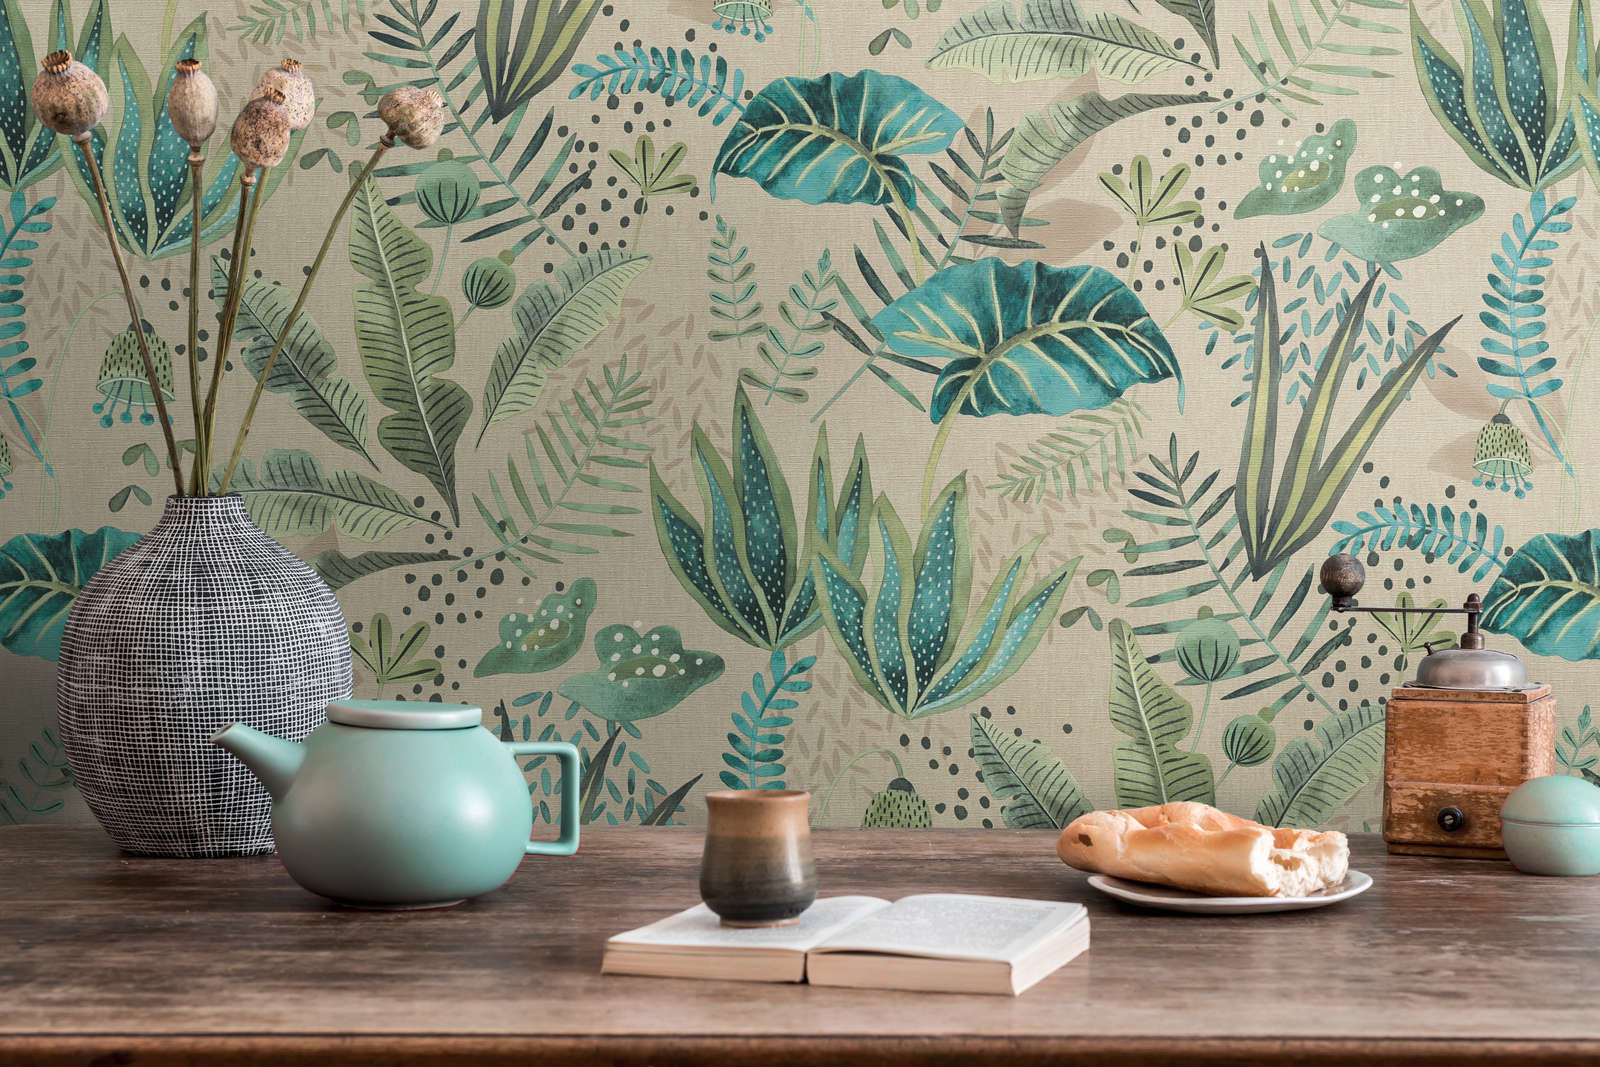             wallpaper floral with mixed leaves light textured, matt - beige, green, blue
        